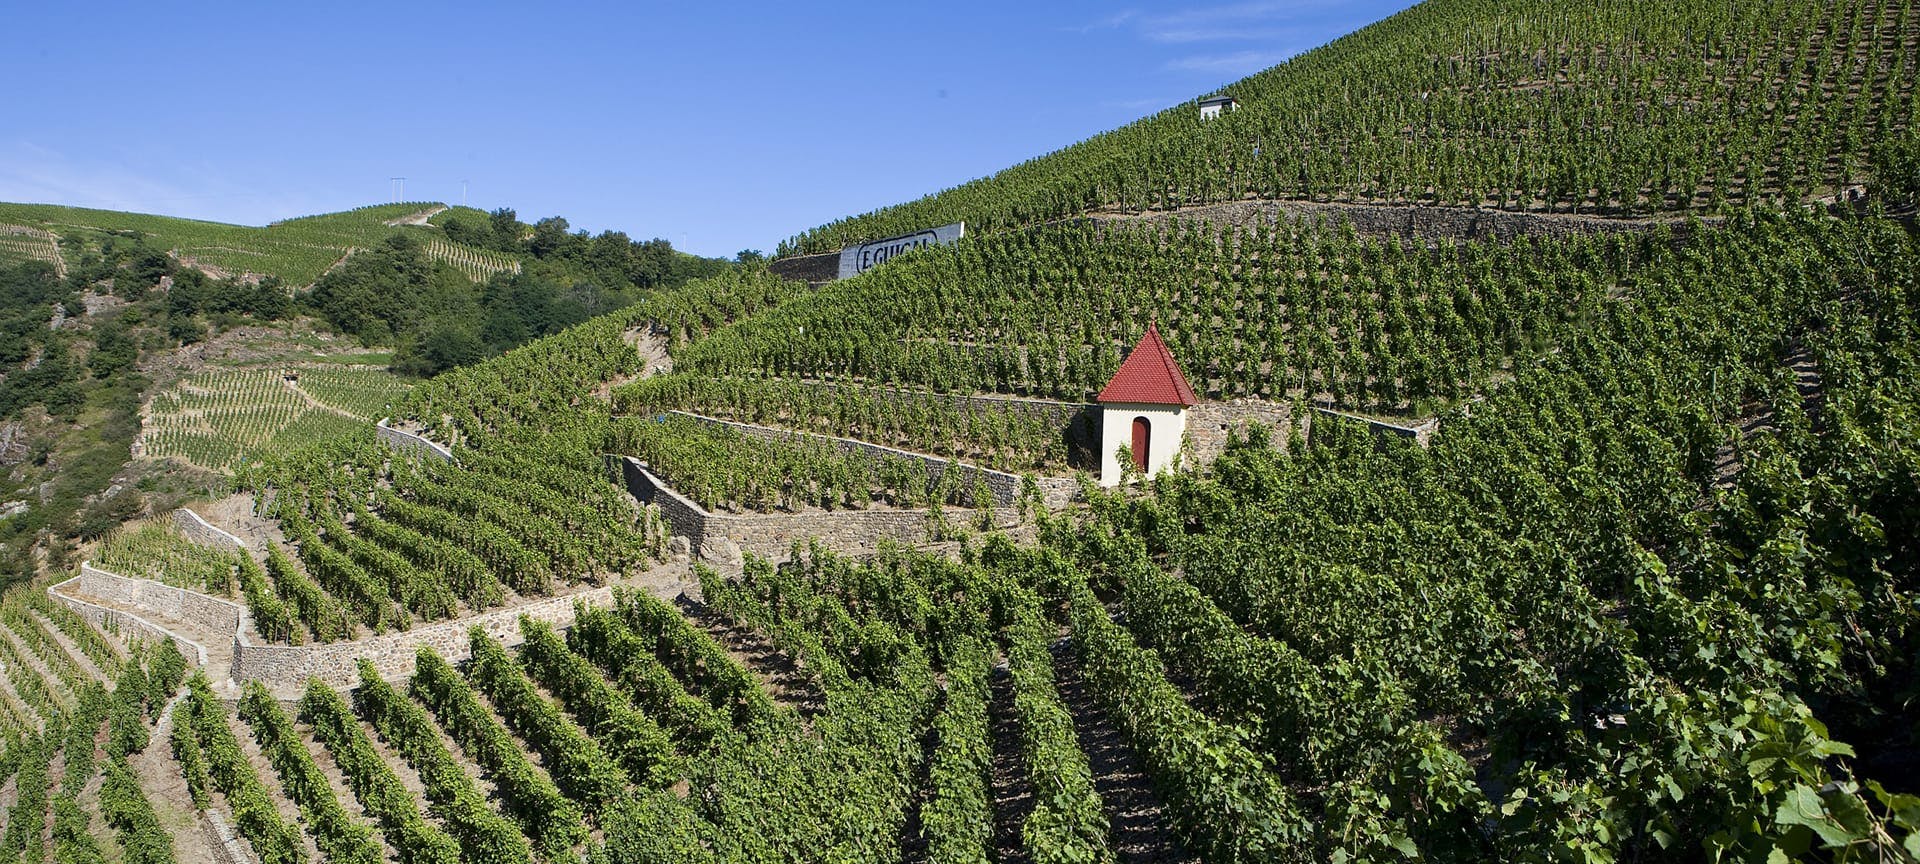 Les vins de la Vallée-du-Rhône nord, France